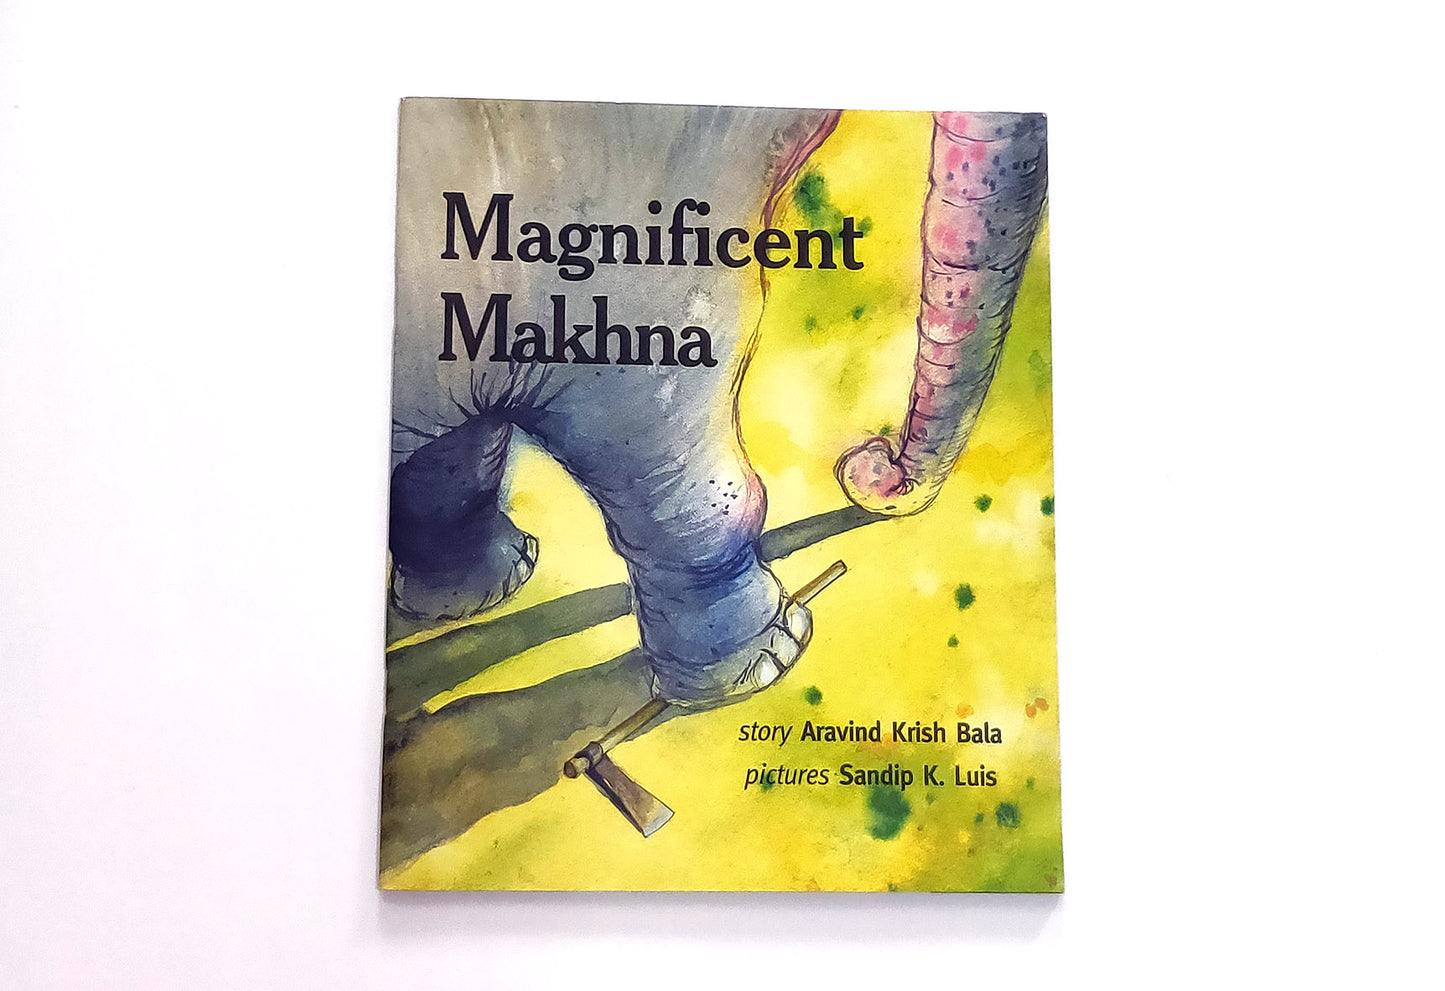 Magnificent Makhna English